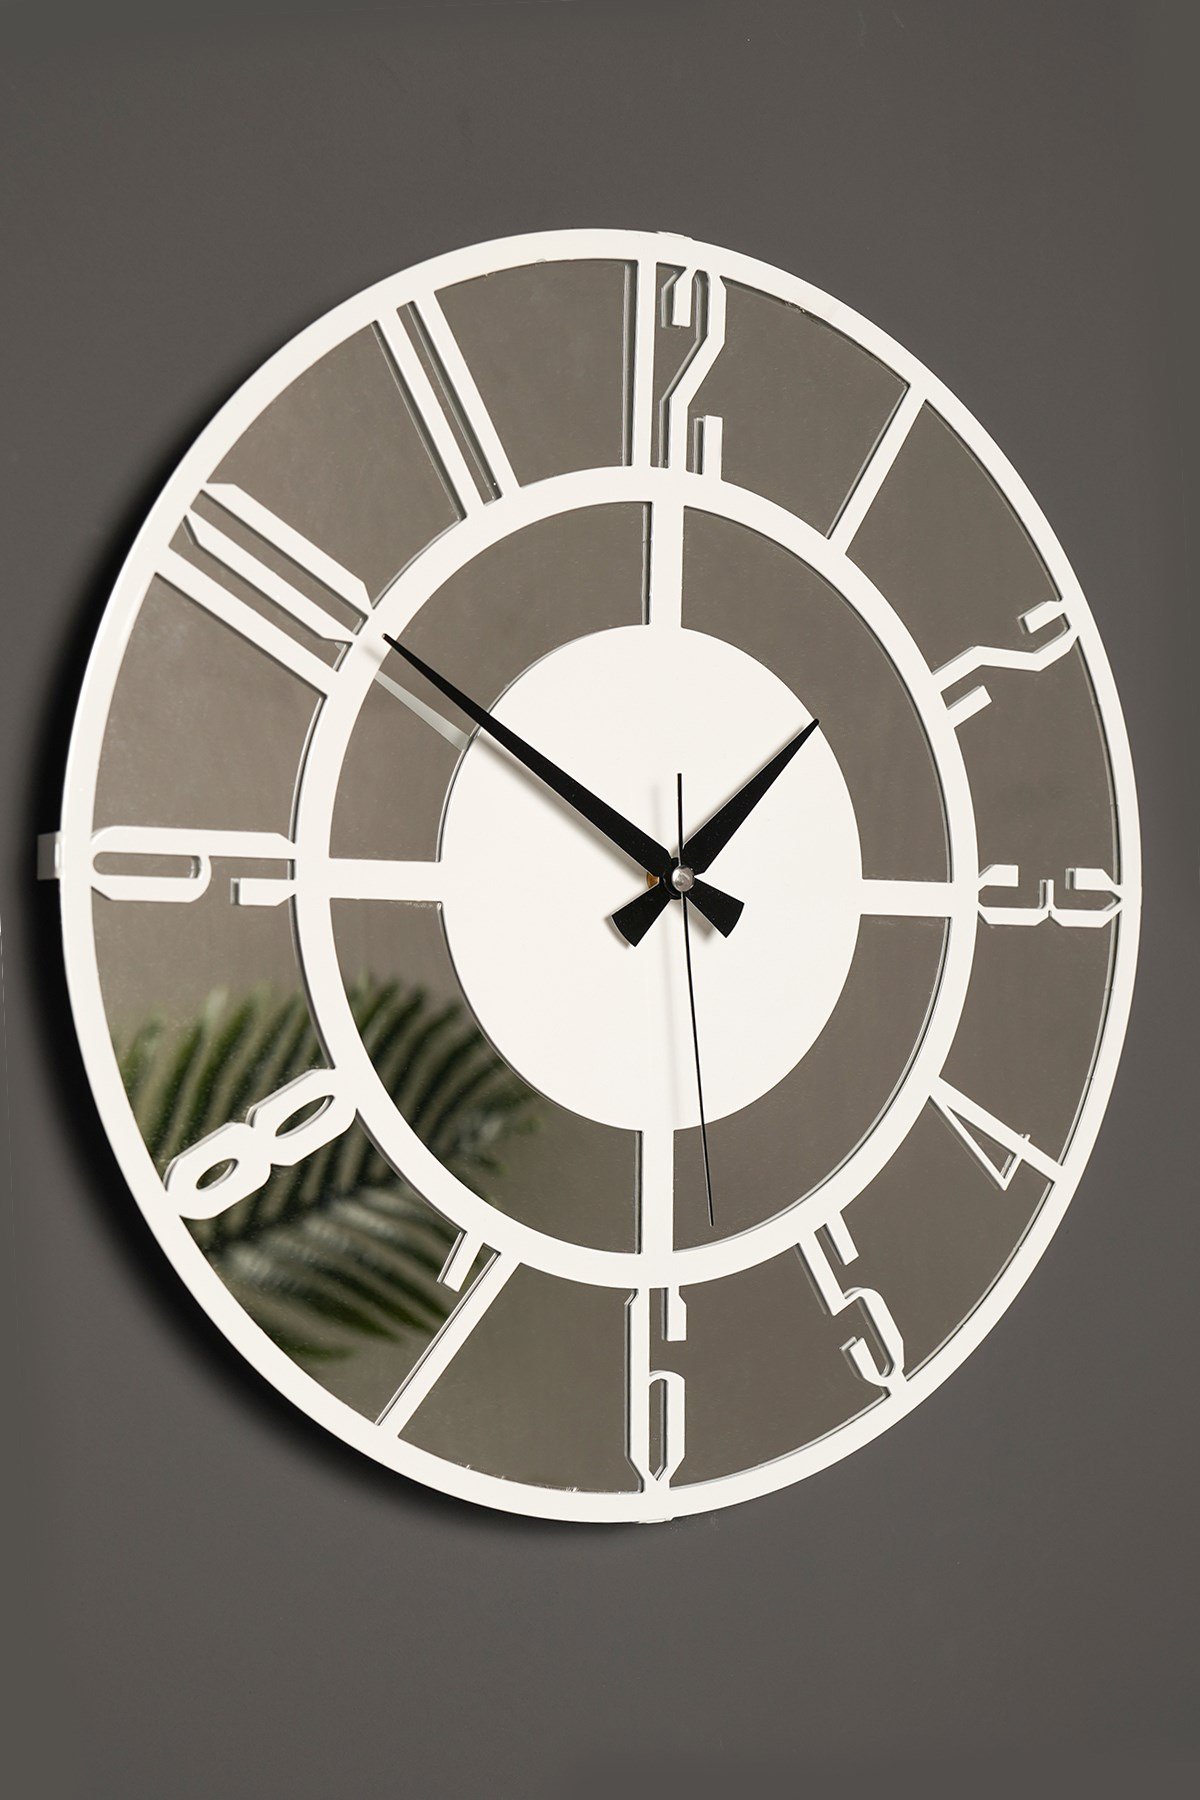 Aynalı Duvar Saatleri Fiyatları ve Daha Birçok Dekoratif Ürün | MuyikaDesign